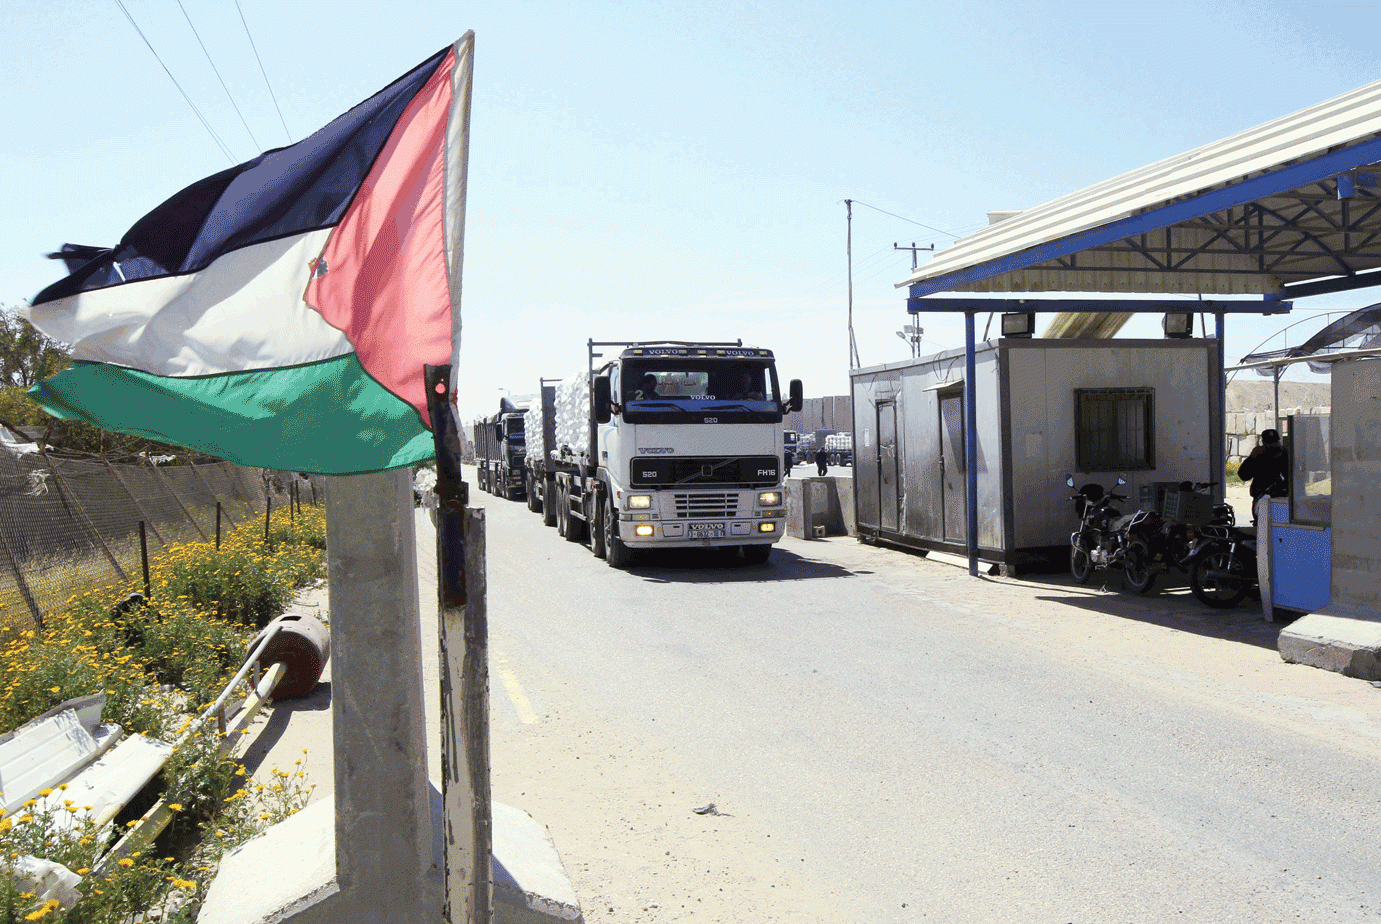 تشکیلات خودگردان فلسطین واردات کالاهای رژیم صهیونیستی را ممنوع کرد